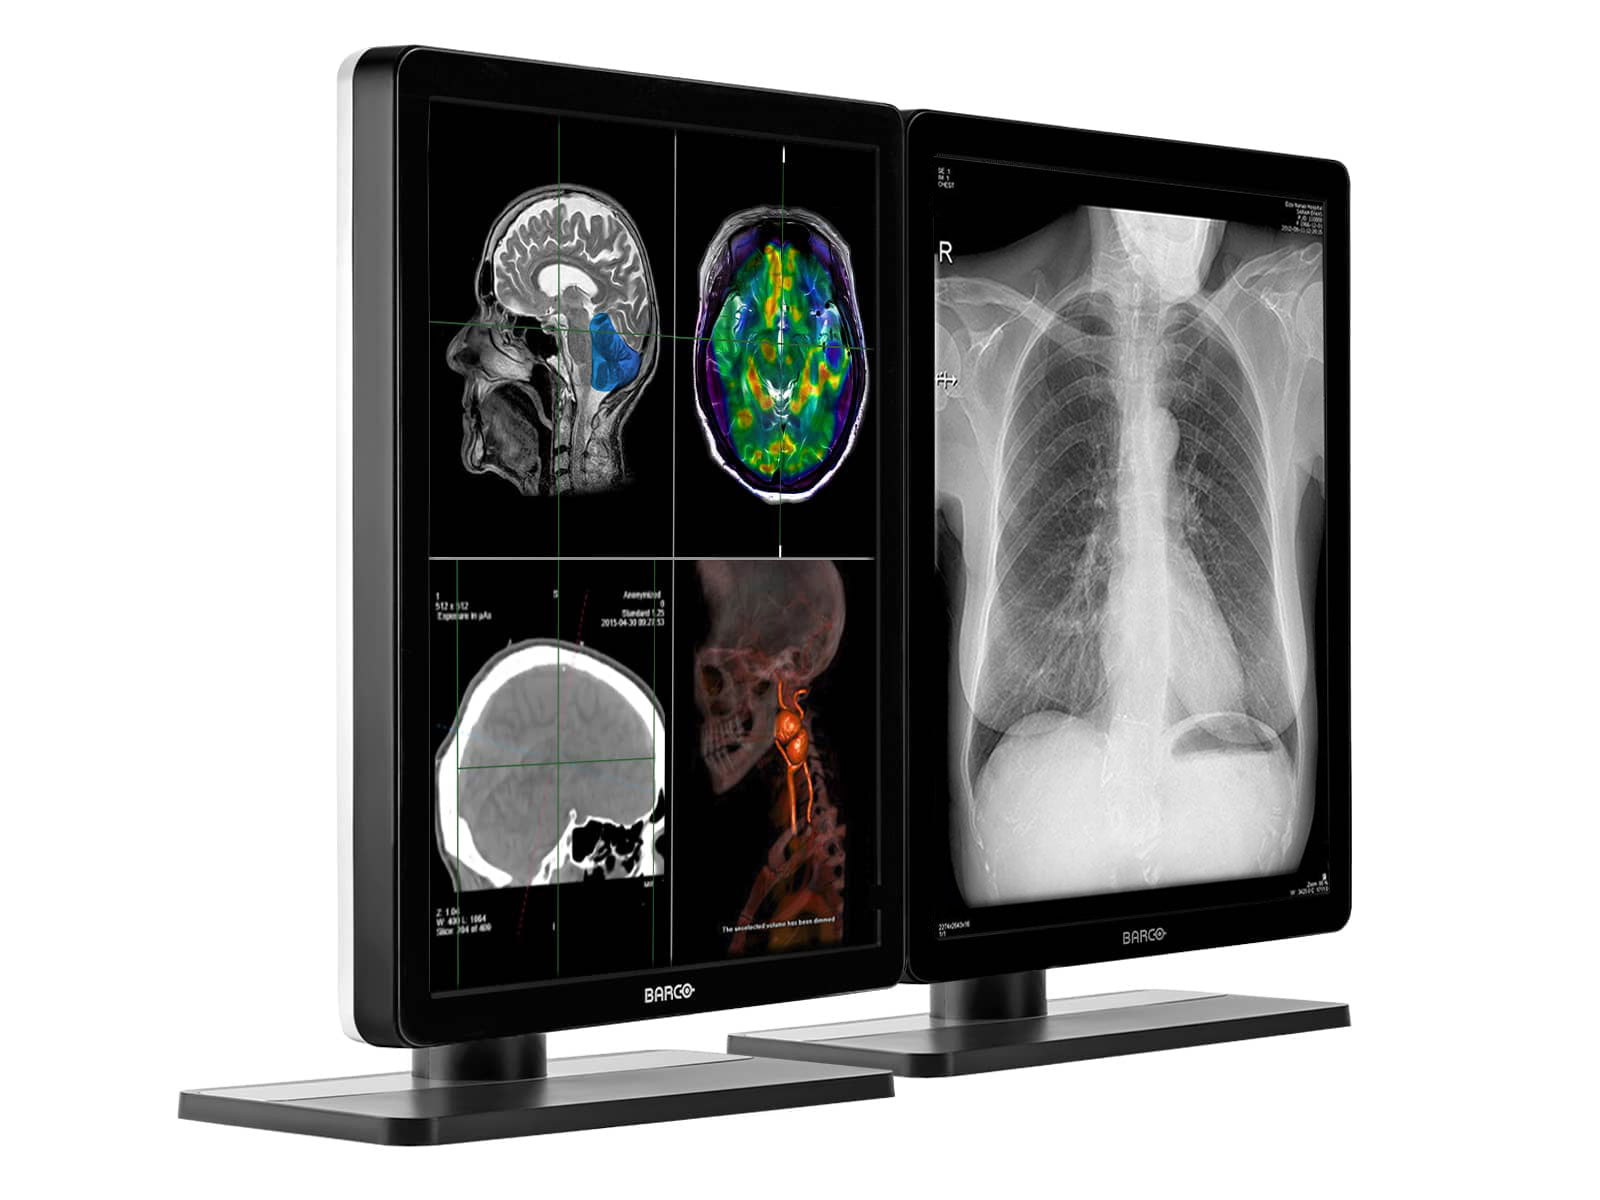 Barco Nio MDNC-3321 3MP 21" Farb-LED-PACS-Display für allgemeine Radiologiediagnose